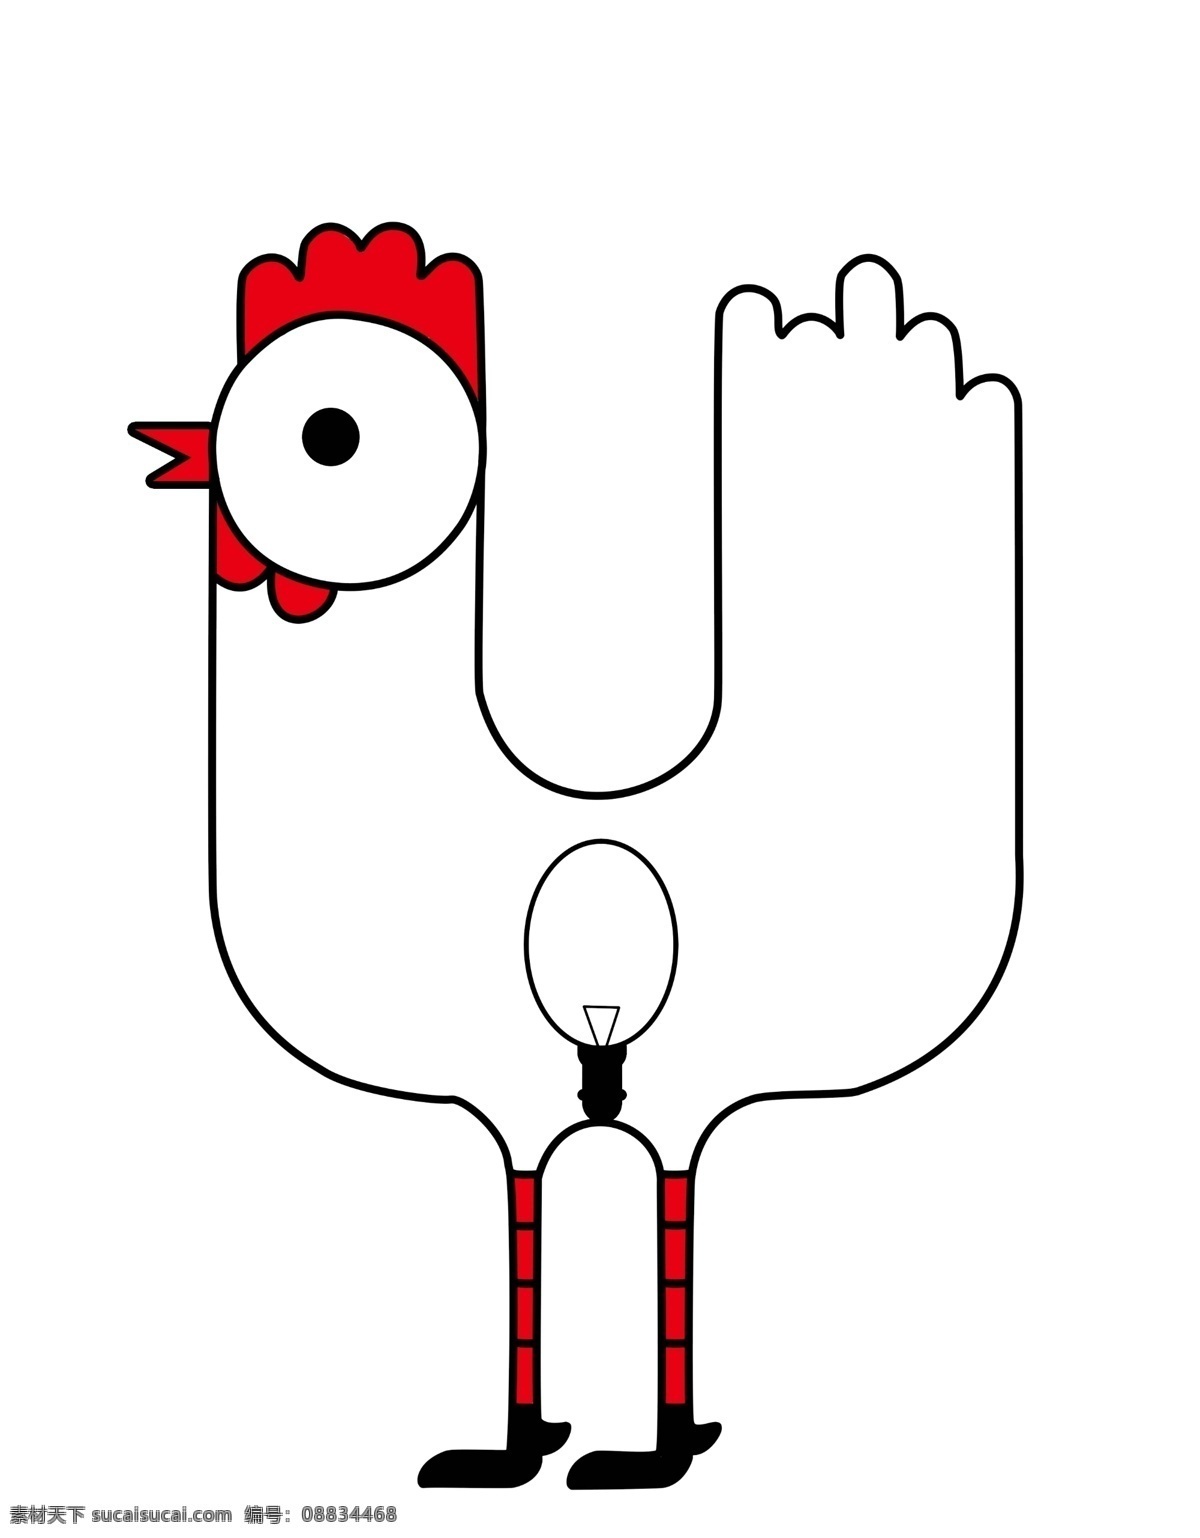 卡通 手绘 小鸡 灯饰 个性灯泡 卡通可爱灯泡 卡通可爱小鸡 可爱小鸡灯泡 搞怪灯泡 卡通手绘灯饰